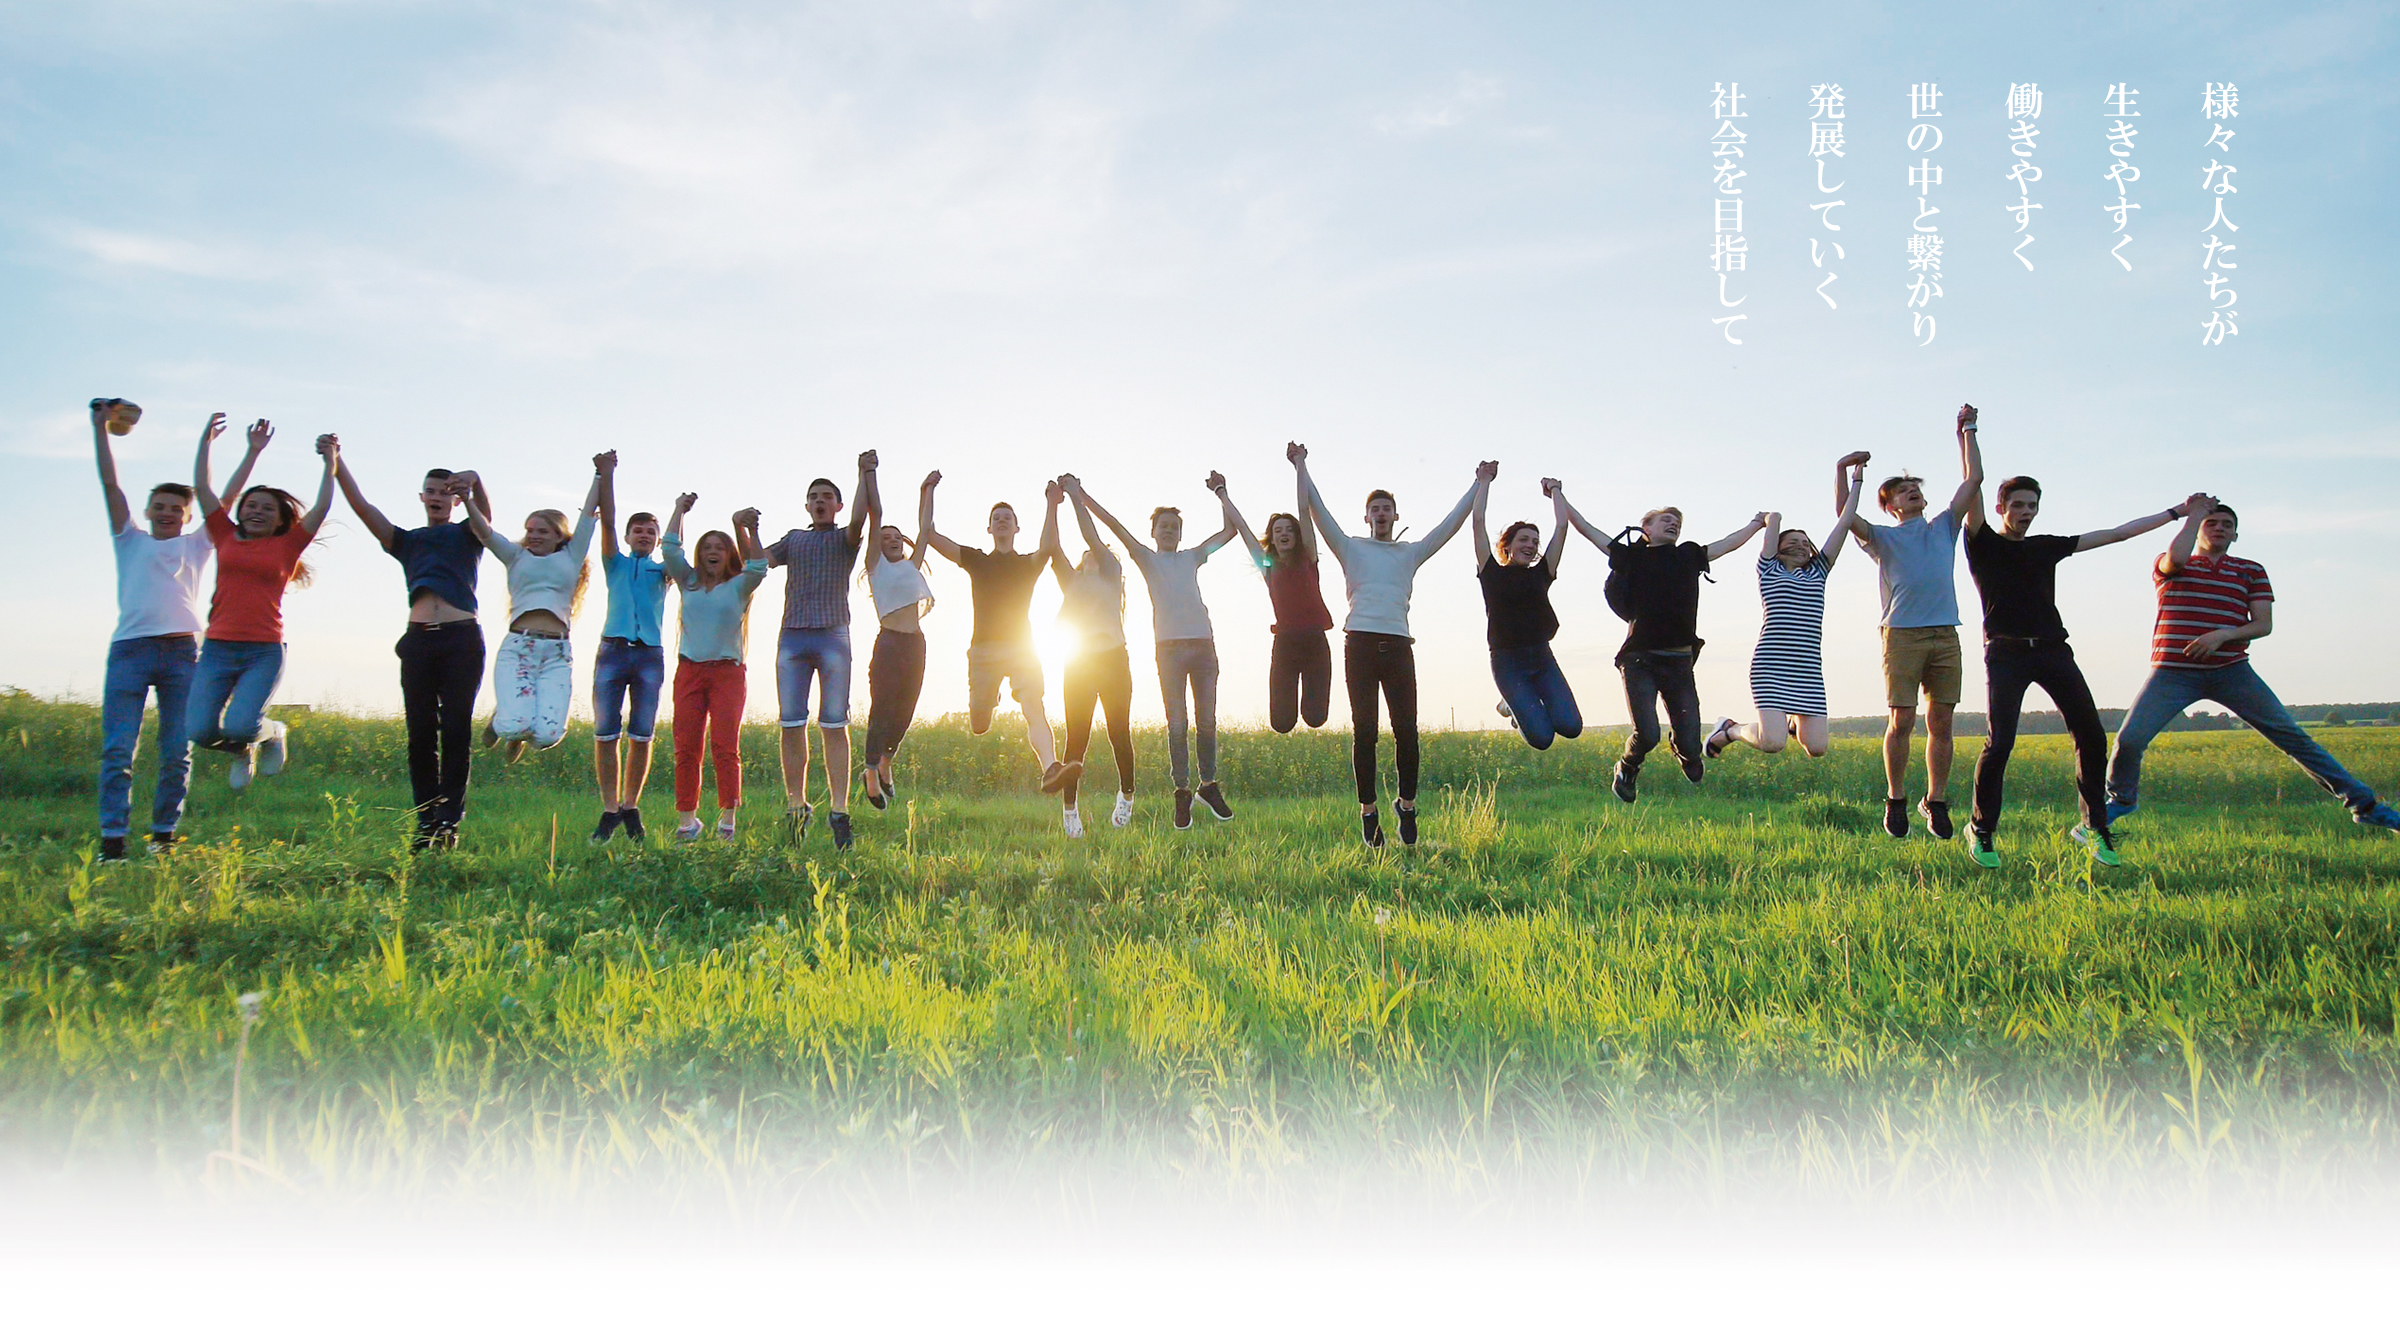 太陽を背に草原で一列になって笑顔で手をつないでいる19名の若者の写真